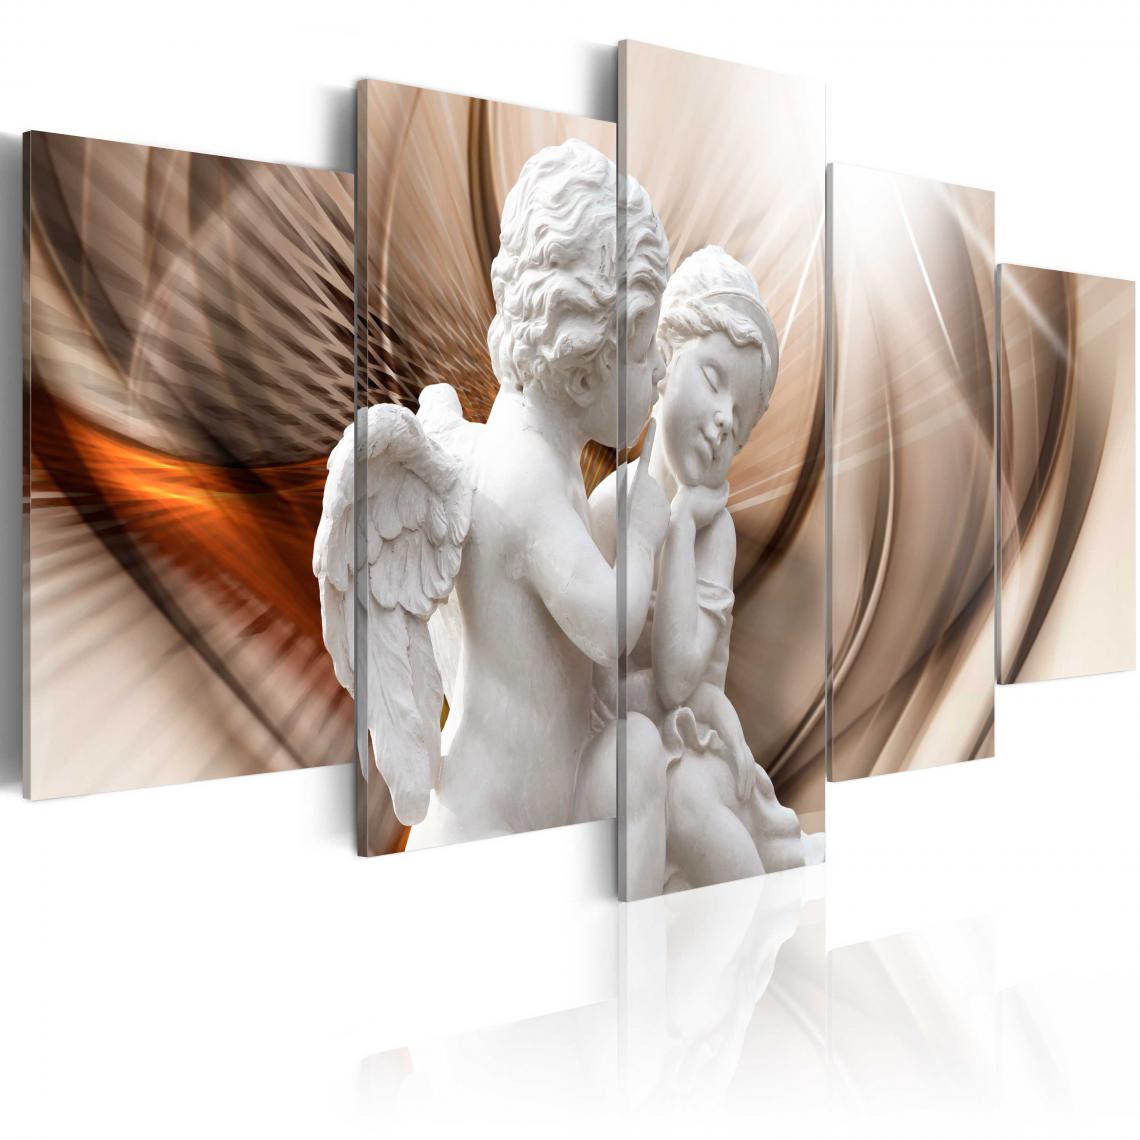 Decoshop26 - Tableau sur toile en 5 panneaux décoration murale image imprimée cadre en bois à suspendre Duo angélique 200x100 cm 11_0001998 - Tableaux, peintures